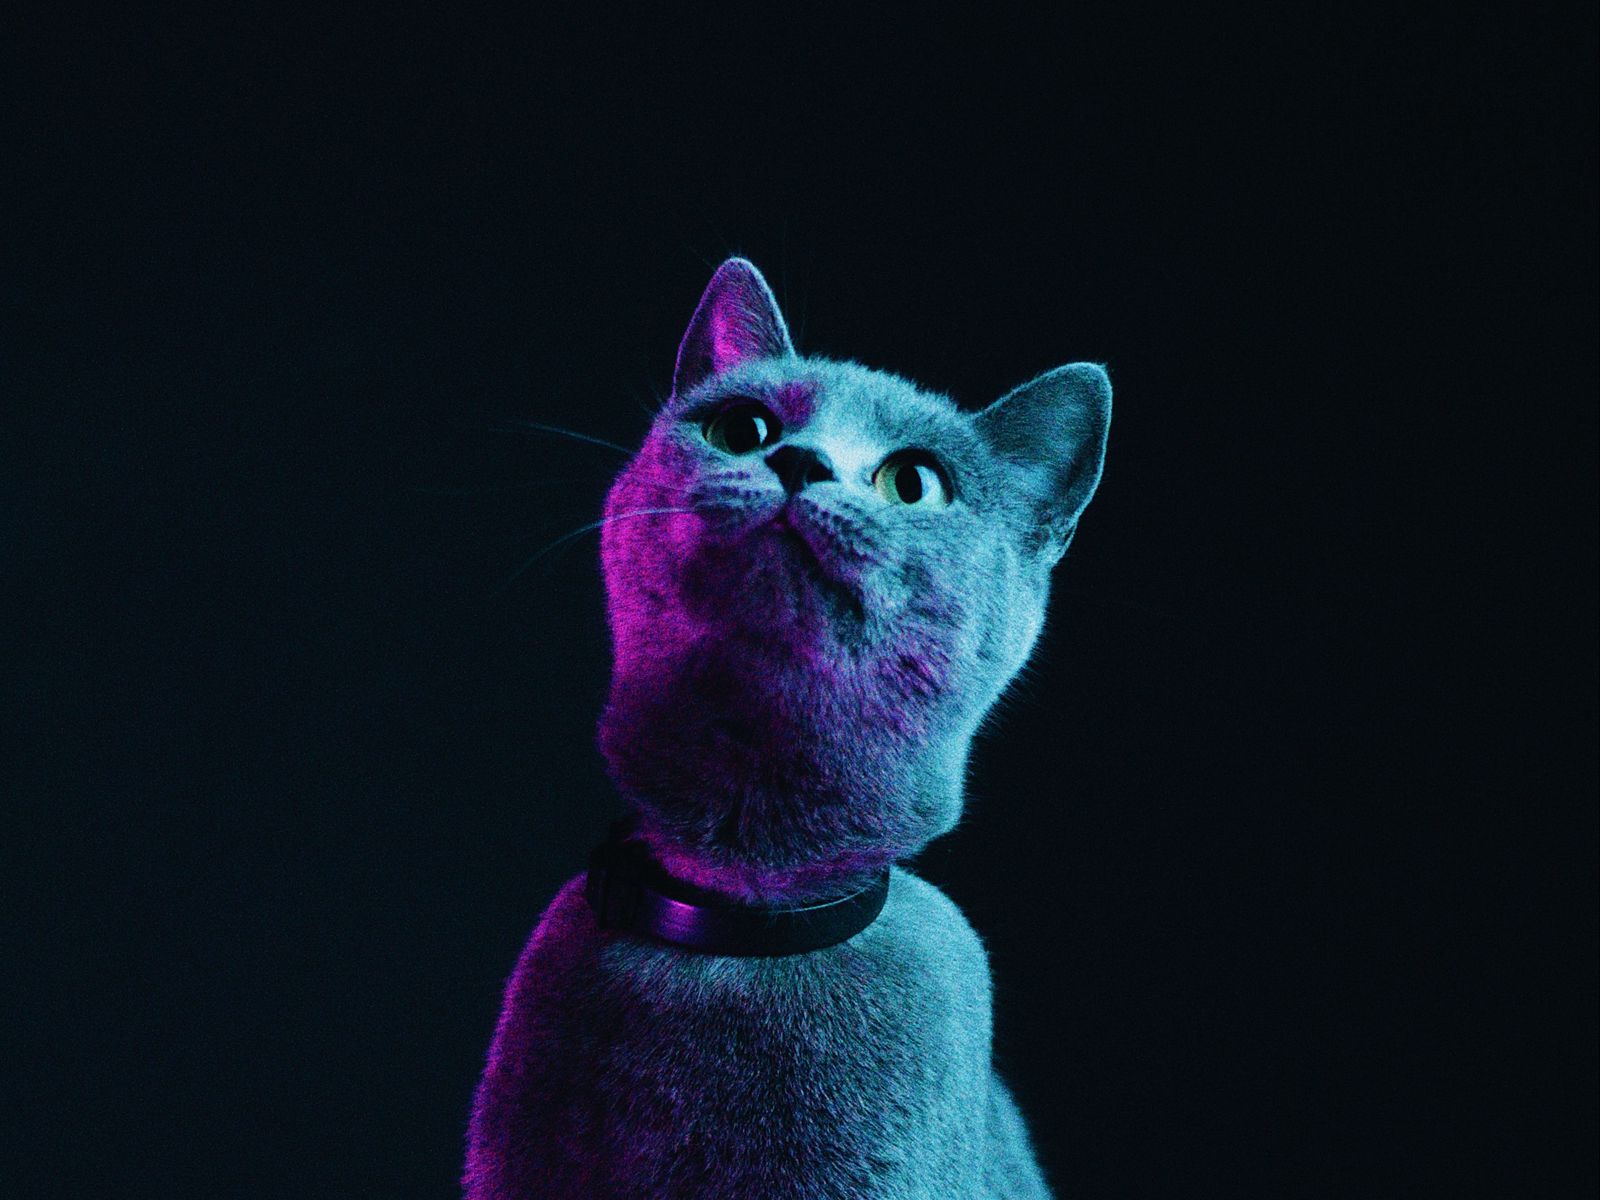 Cat Neon Wallpapers - Wallpaper Cave